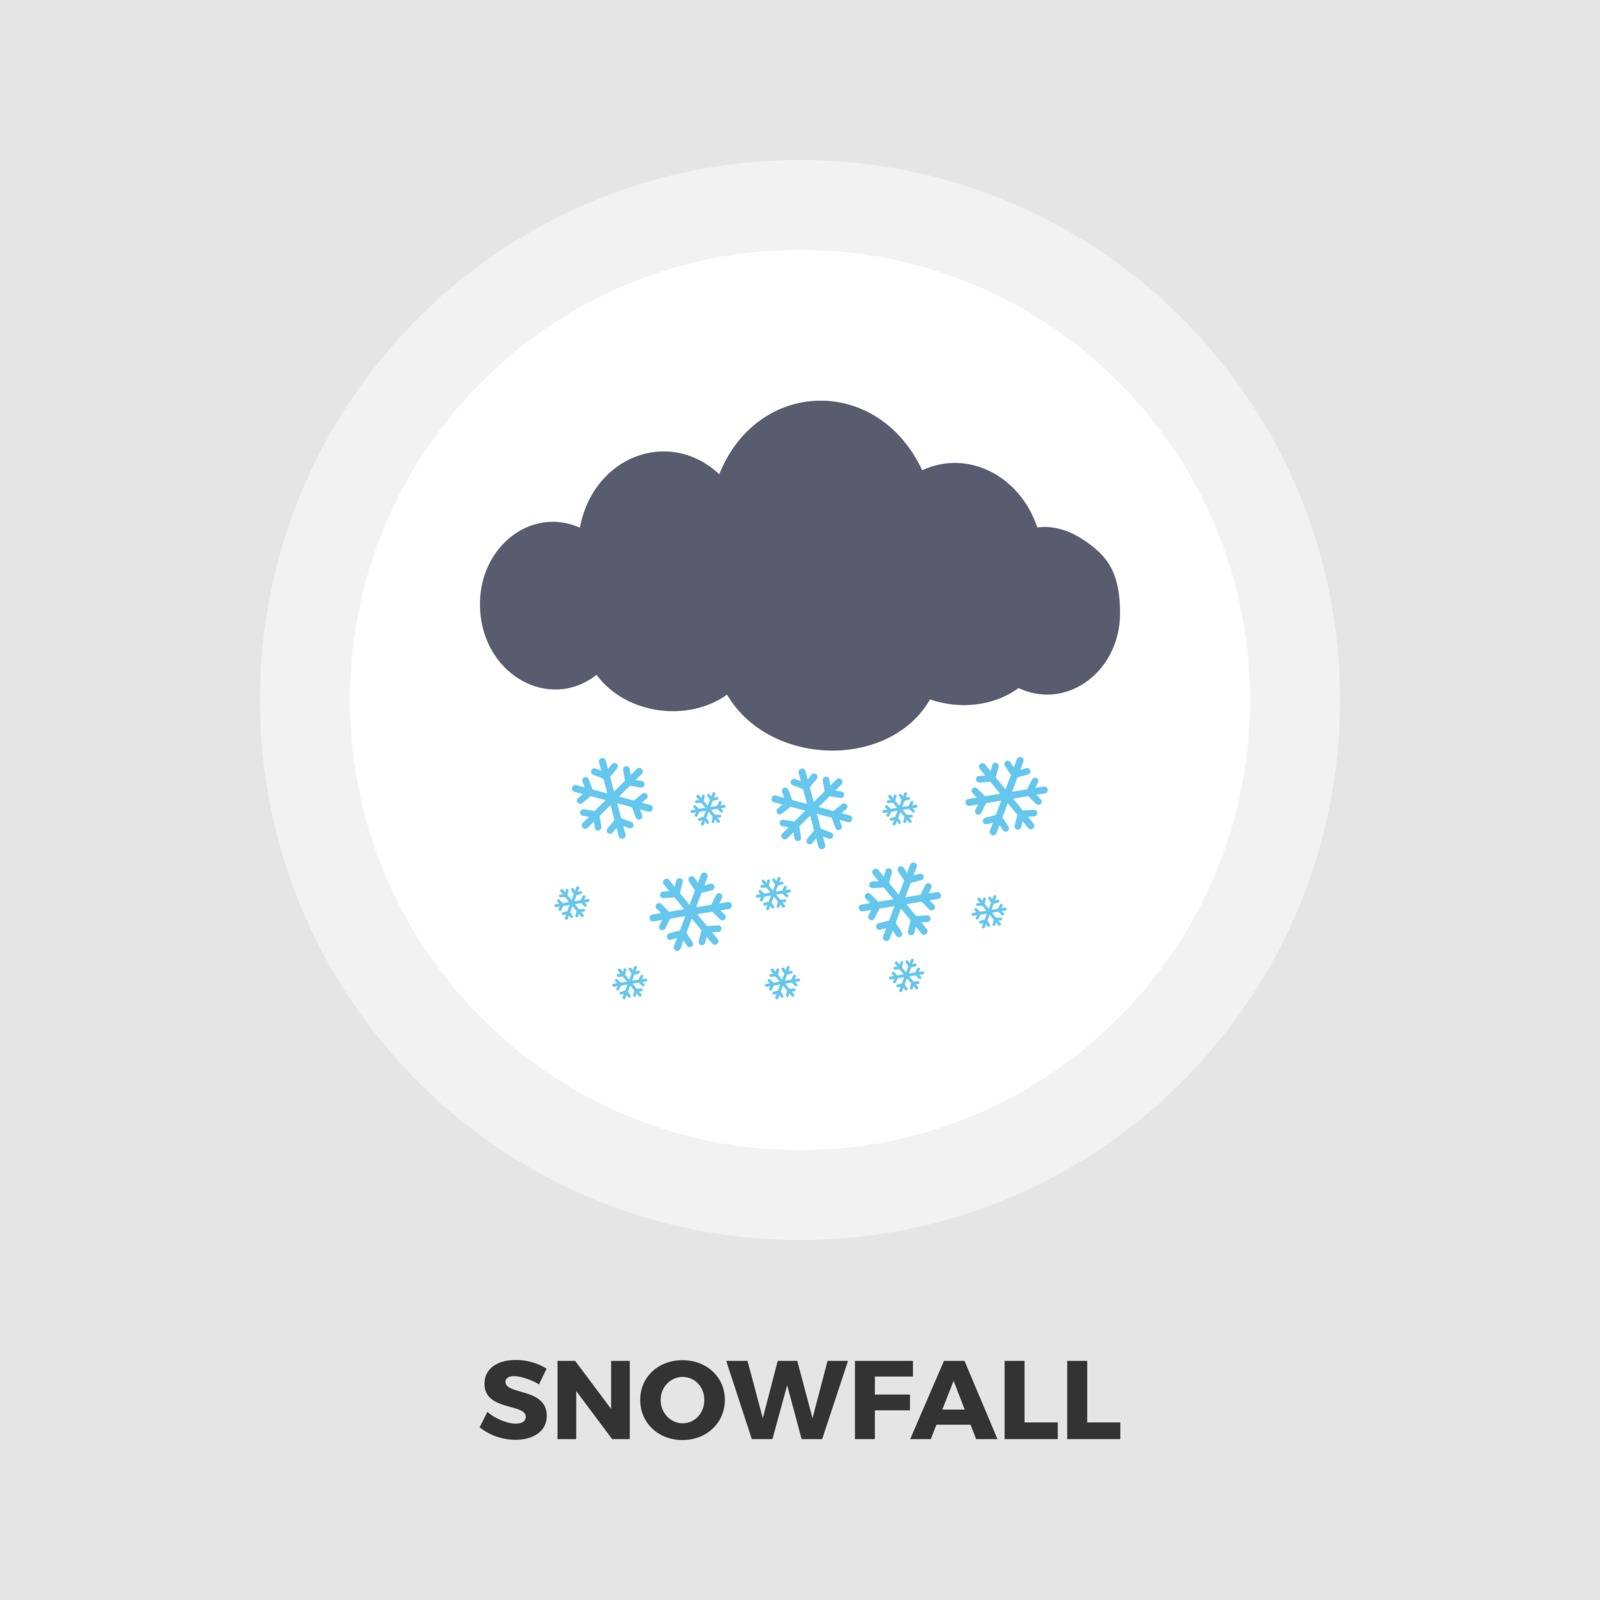 Snowfall icon flat by smoki